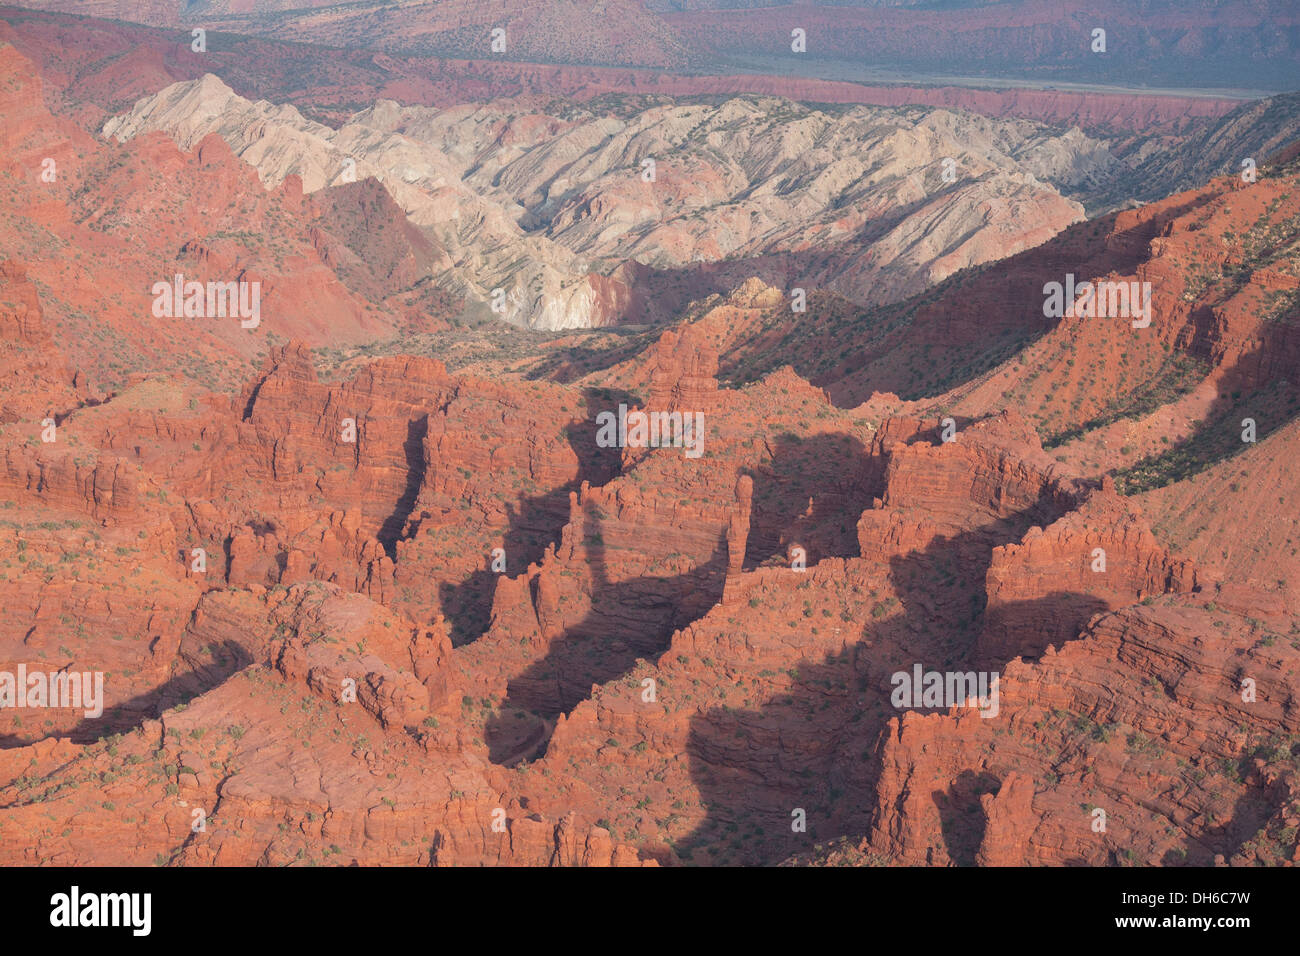 LUFTAUFNAHME. Geologische Bildung von roten Sandsteinklippen und weißen Salzkuppen. Onion Creek Canyon in der Nähe von Moab, Grand County, Utah, USA. Stockfoto